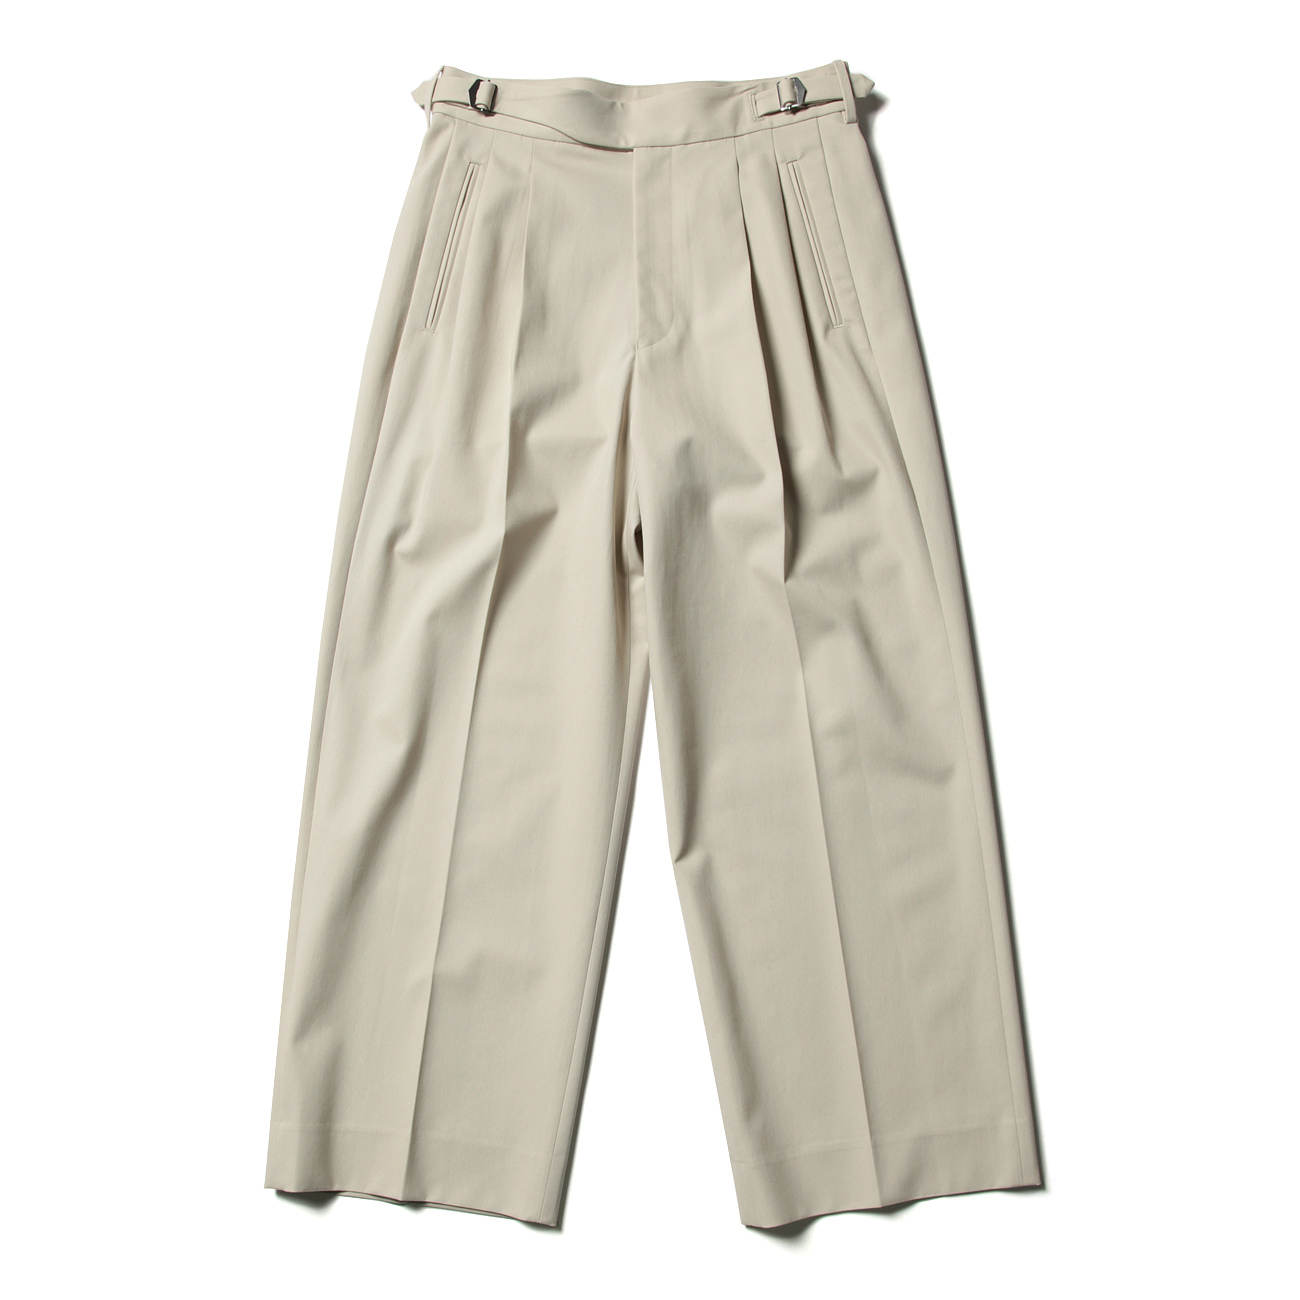 【YOKE】2tuck Wide Gurkha Trousers